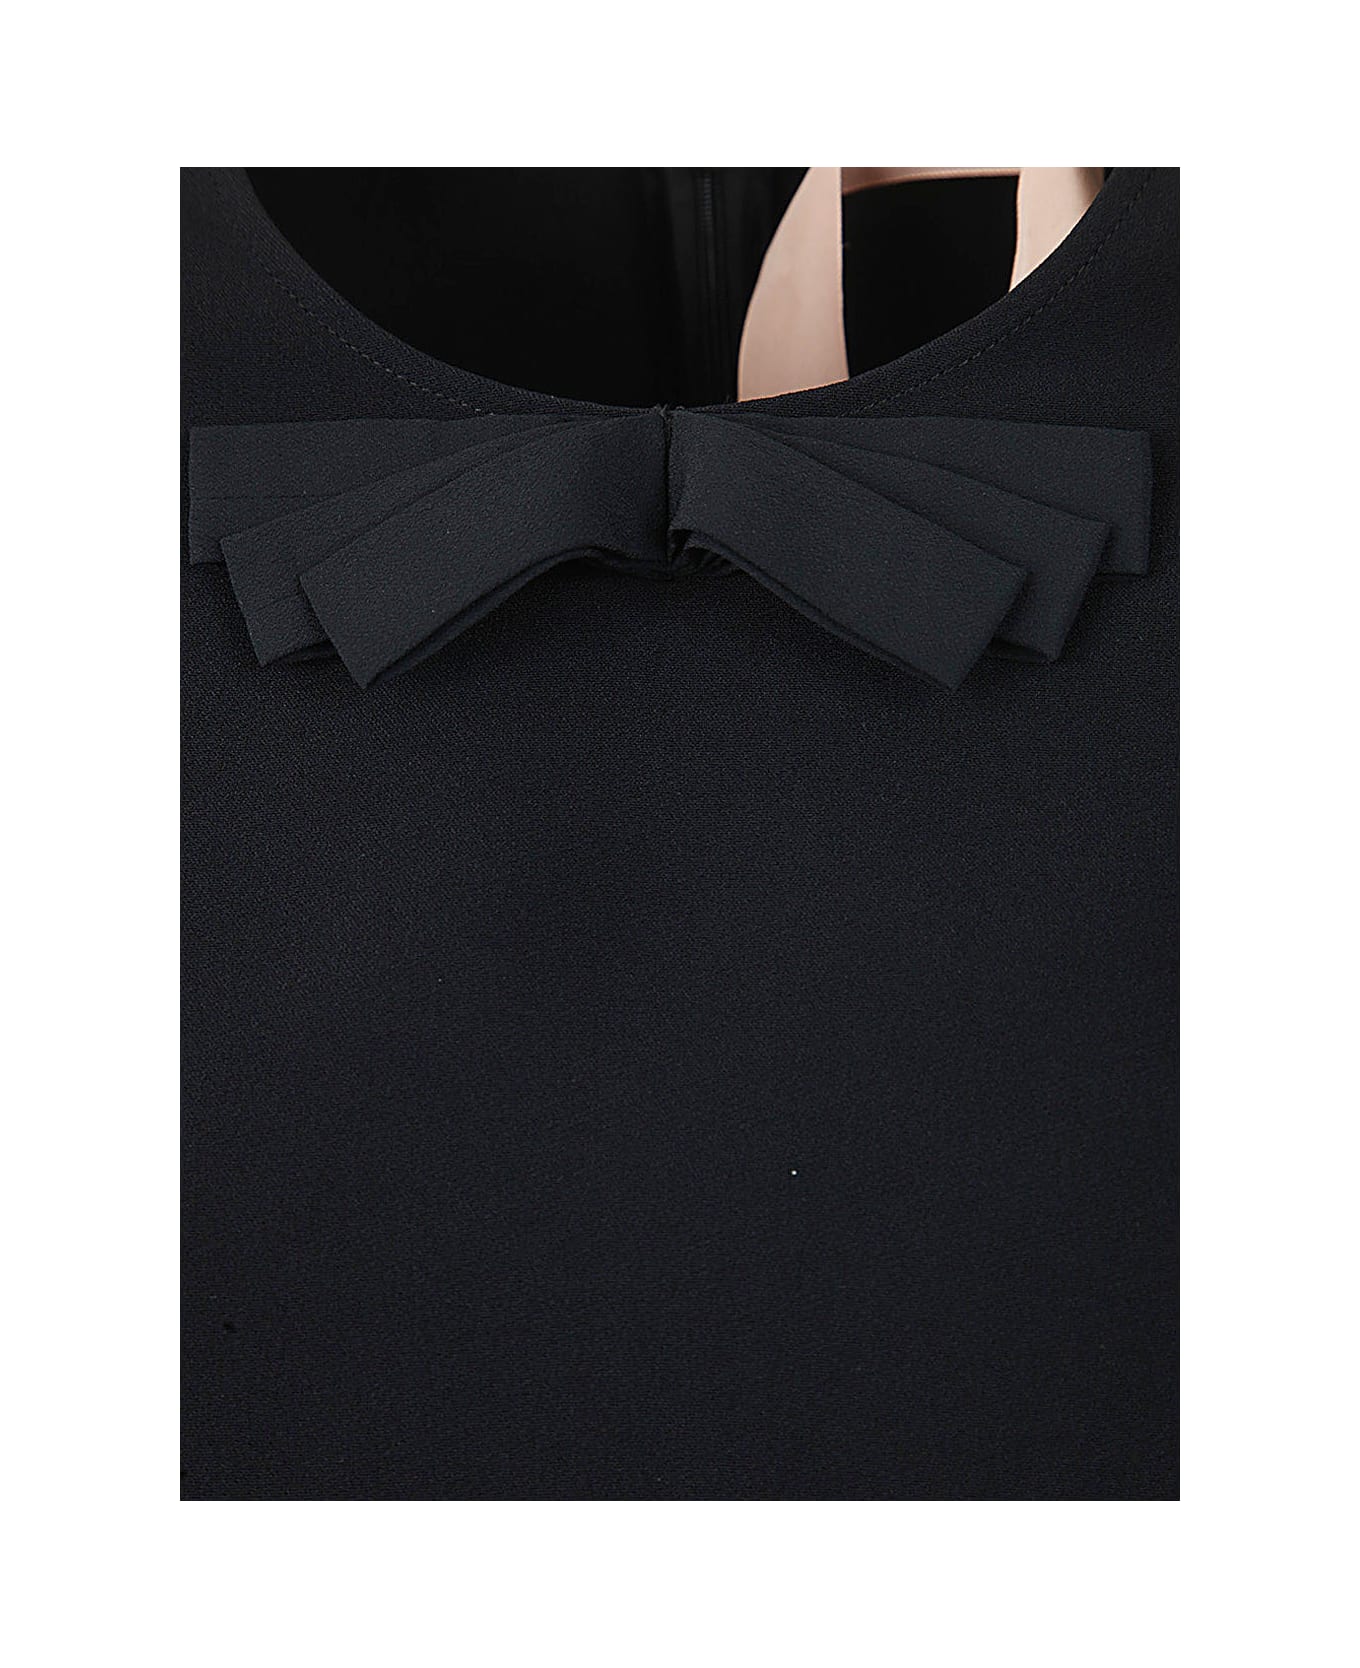 N.21 Three Quarter Sleeve Mini Dress - Black